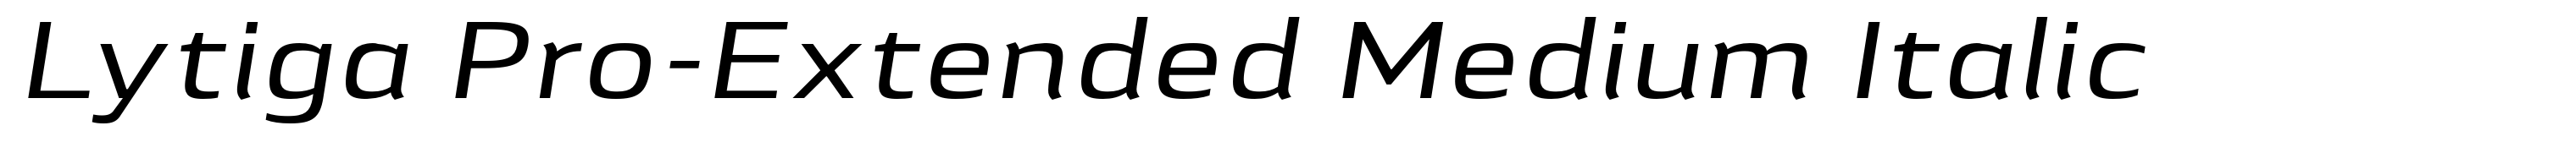 Lytiga Pro-Extended Medium Italic